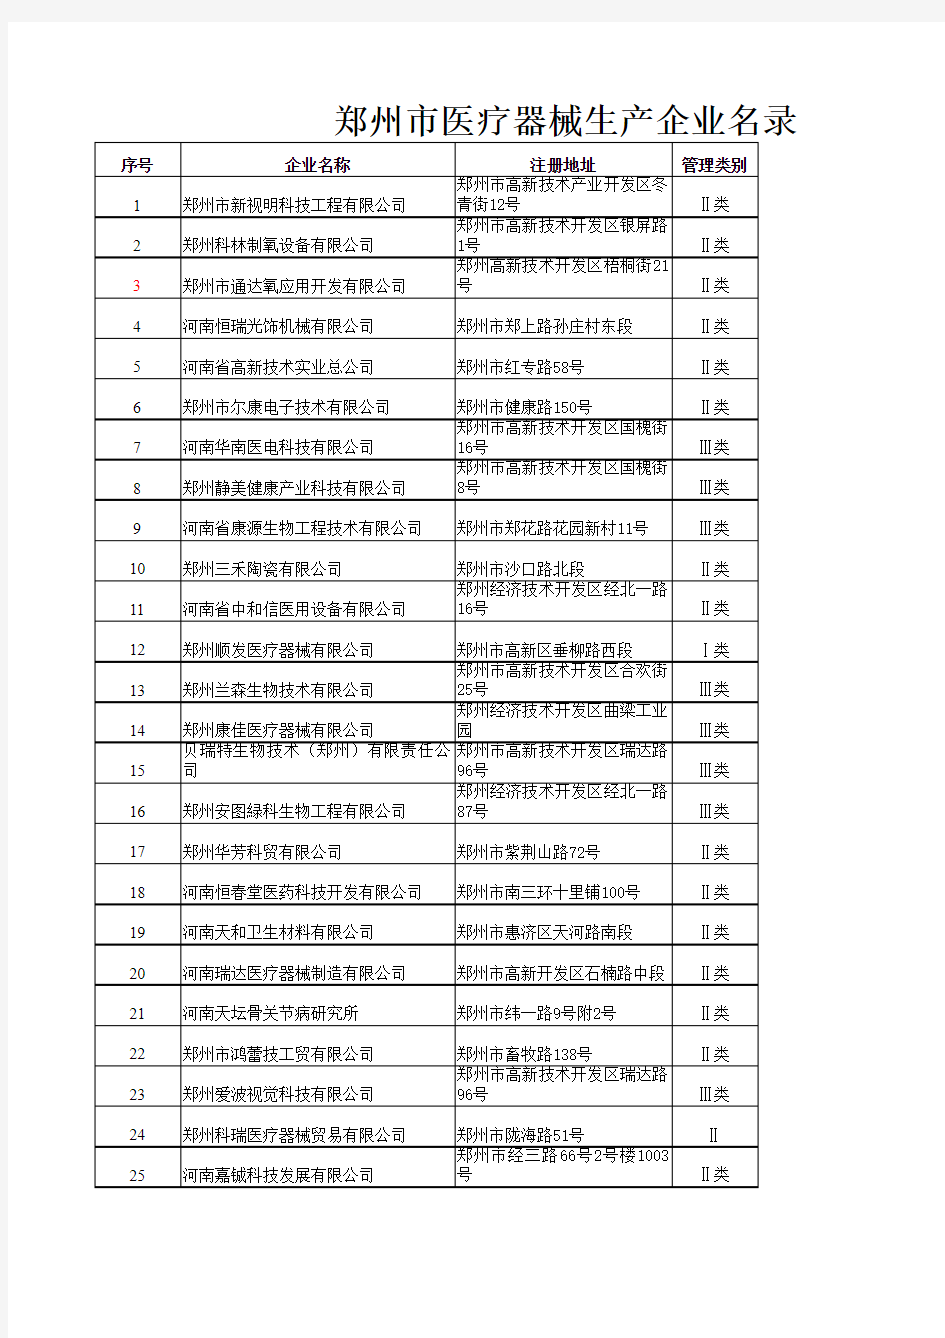 河南省医疗医药行业重点企业名单